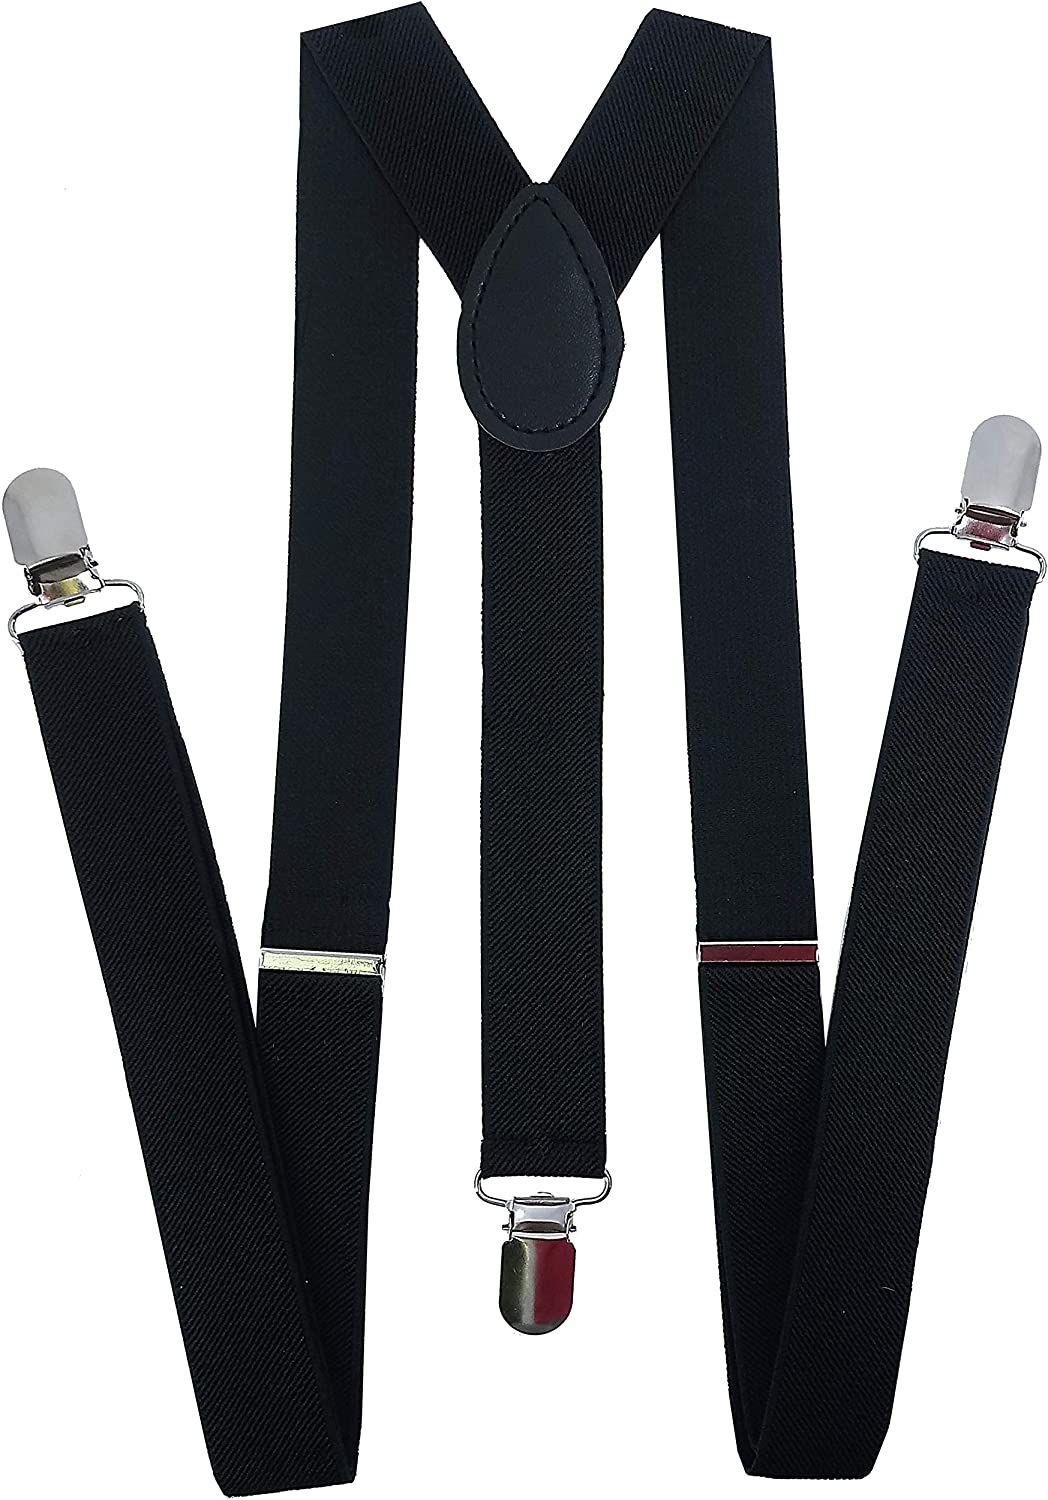 Grade Code Mens Suspenders and Bow Tie Set Adjustable Elastic Clip